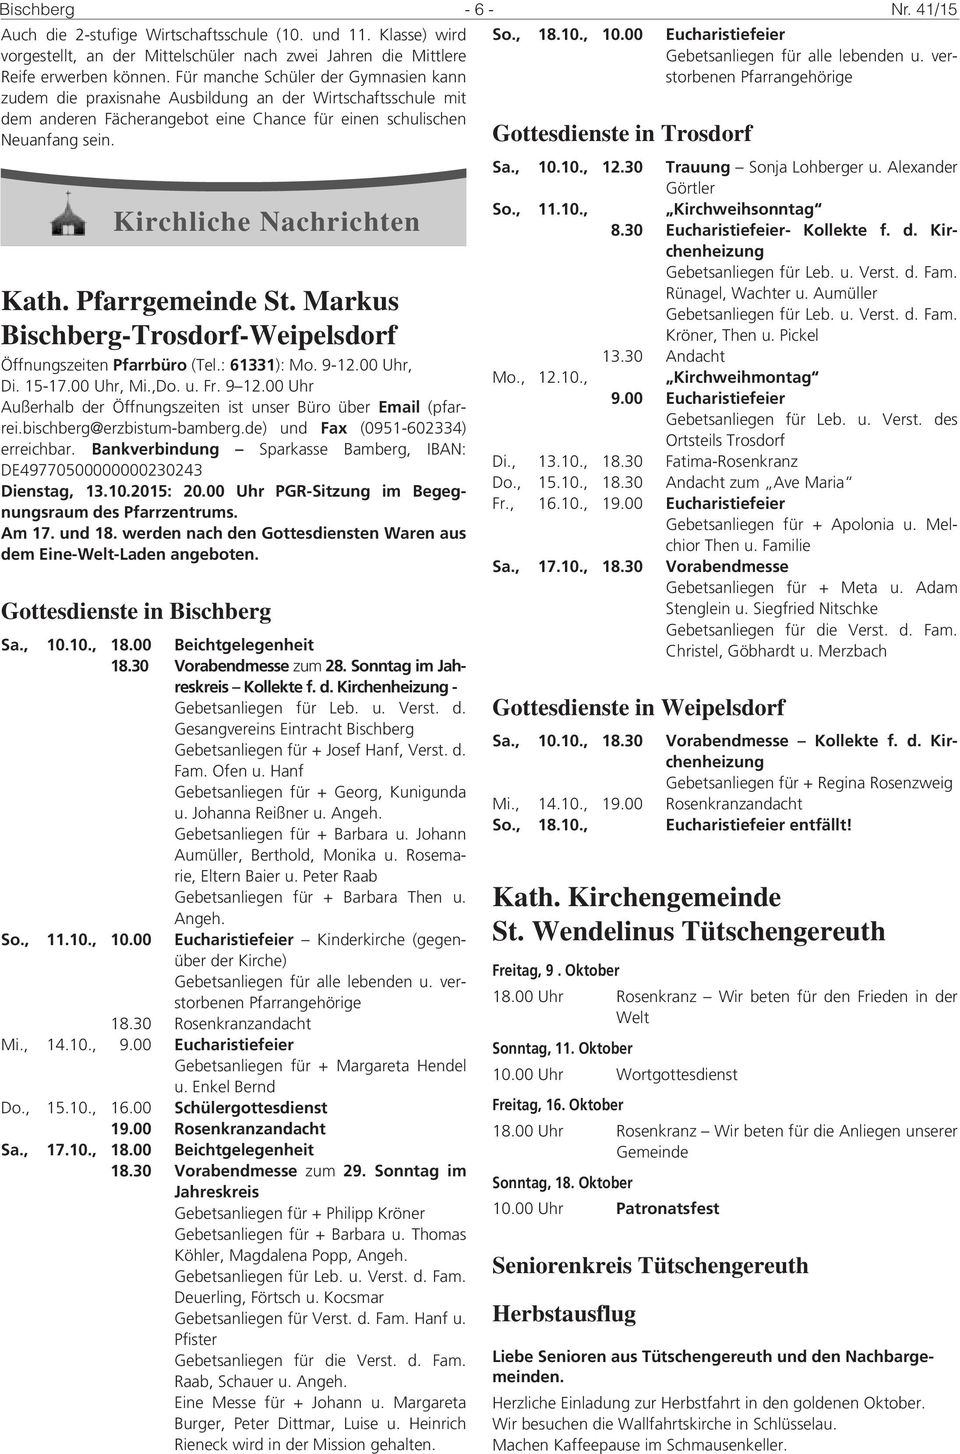 Kirchliche Nachrichten Kath. Pfarrgemeinde St. Markus Bischberg-Trosdorf-Weipelsdorf Öffnungszeiten Pfarrbüro (Tel.: 61331): Mo. 9-12.00 Uhr, Di. 15-17.00 Uhr, Mi.,Do. u. Fr. 9 12.